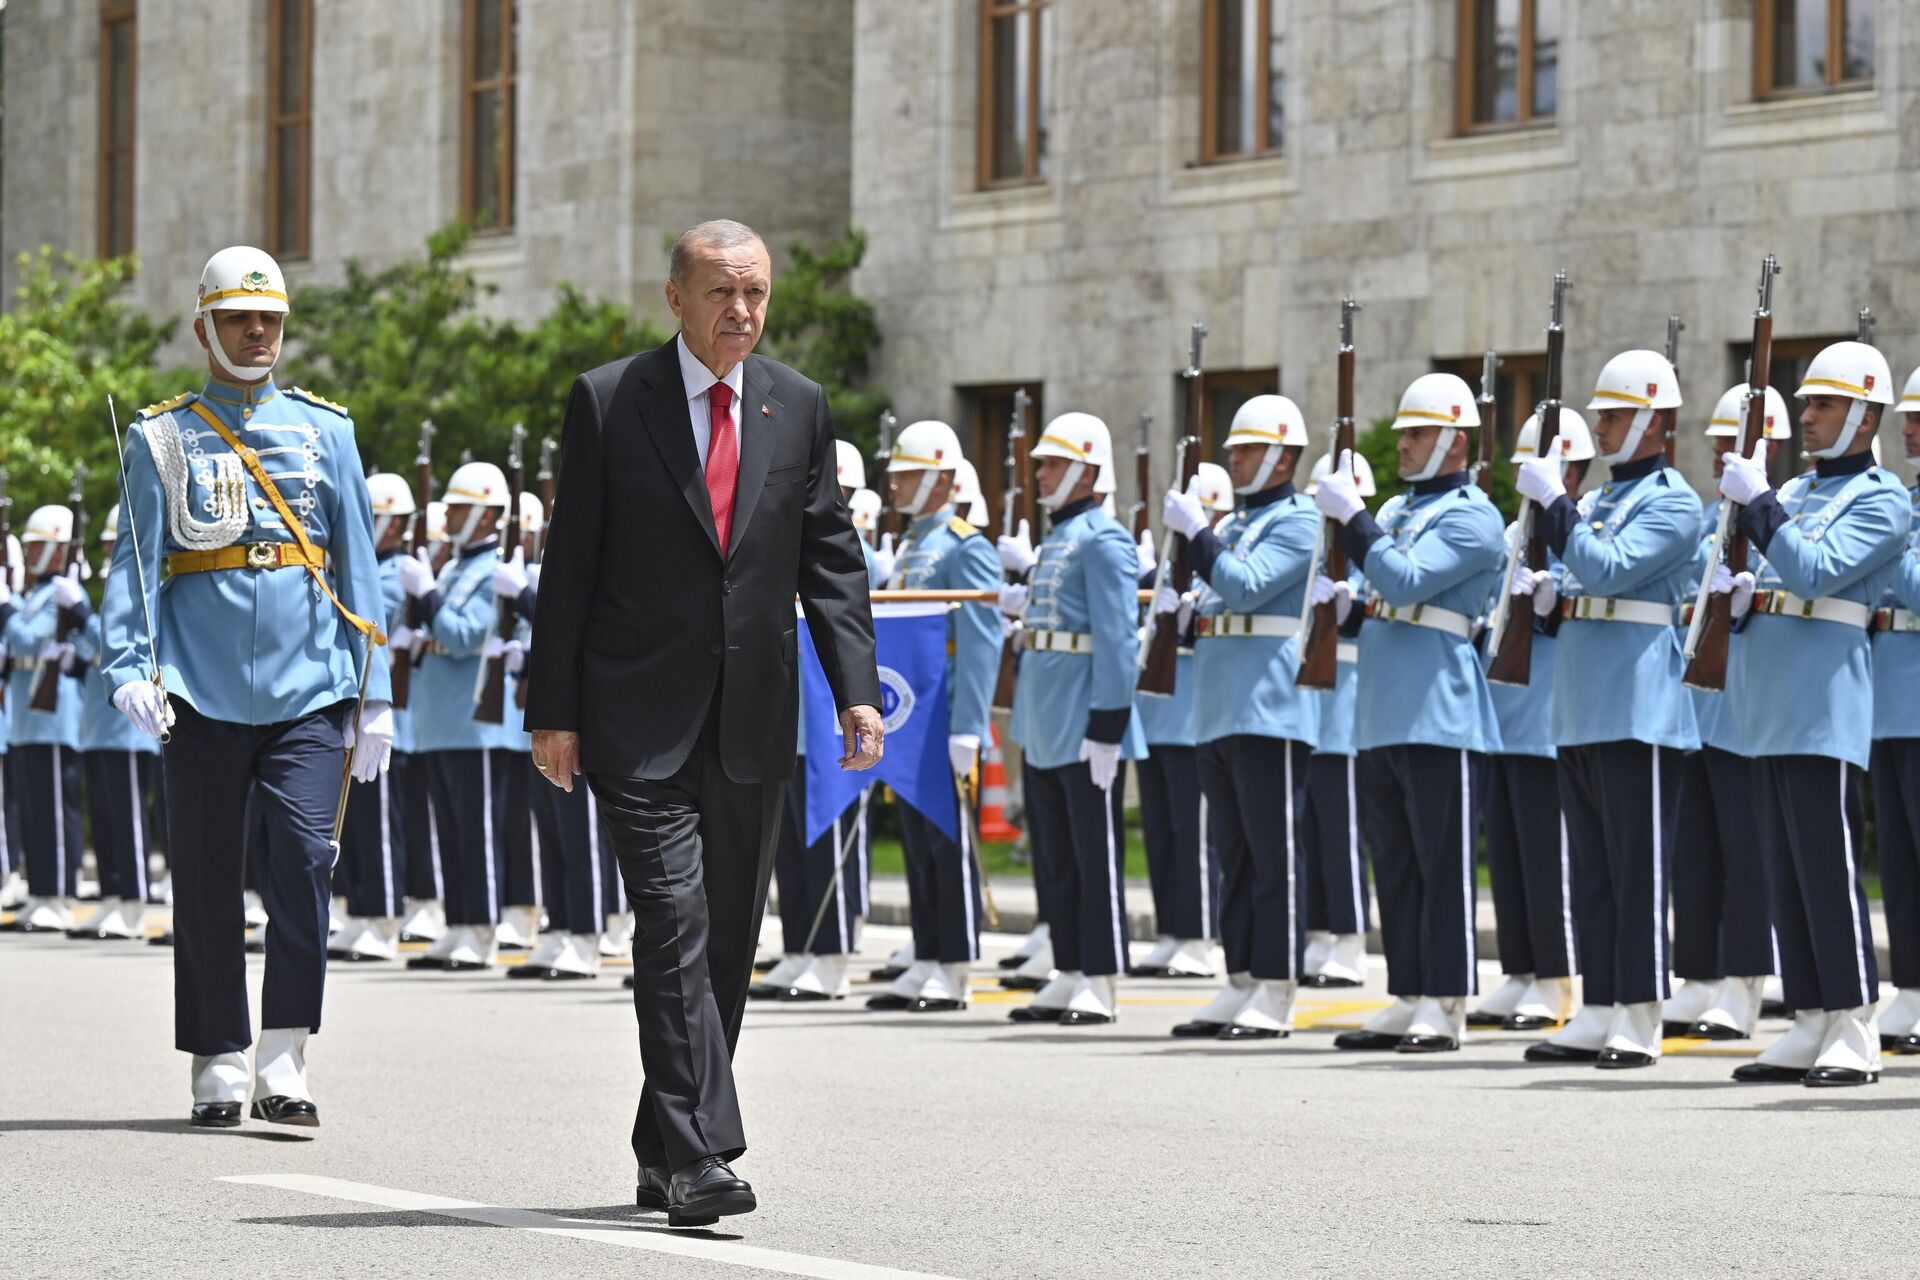 Реџеп Тајип Ердоган на церемонији полагања заклетве и инаугурације председника - Sputnik Србија, 1920, 03.06.2023